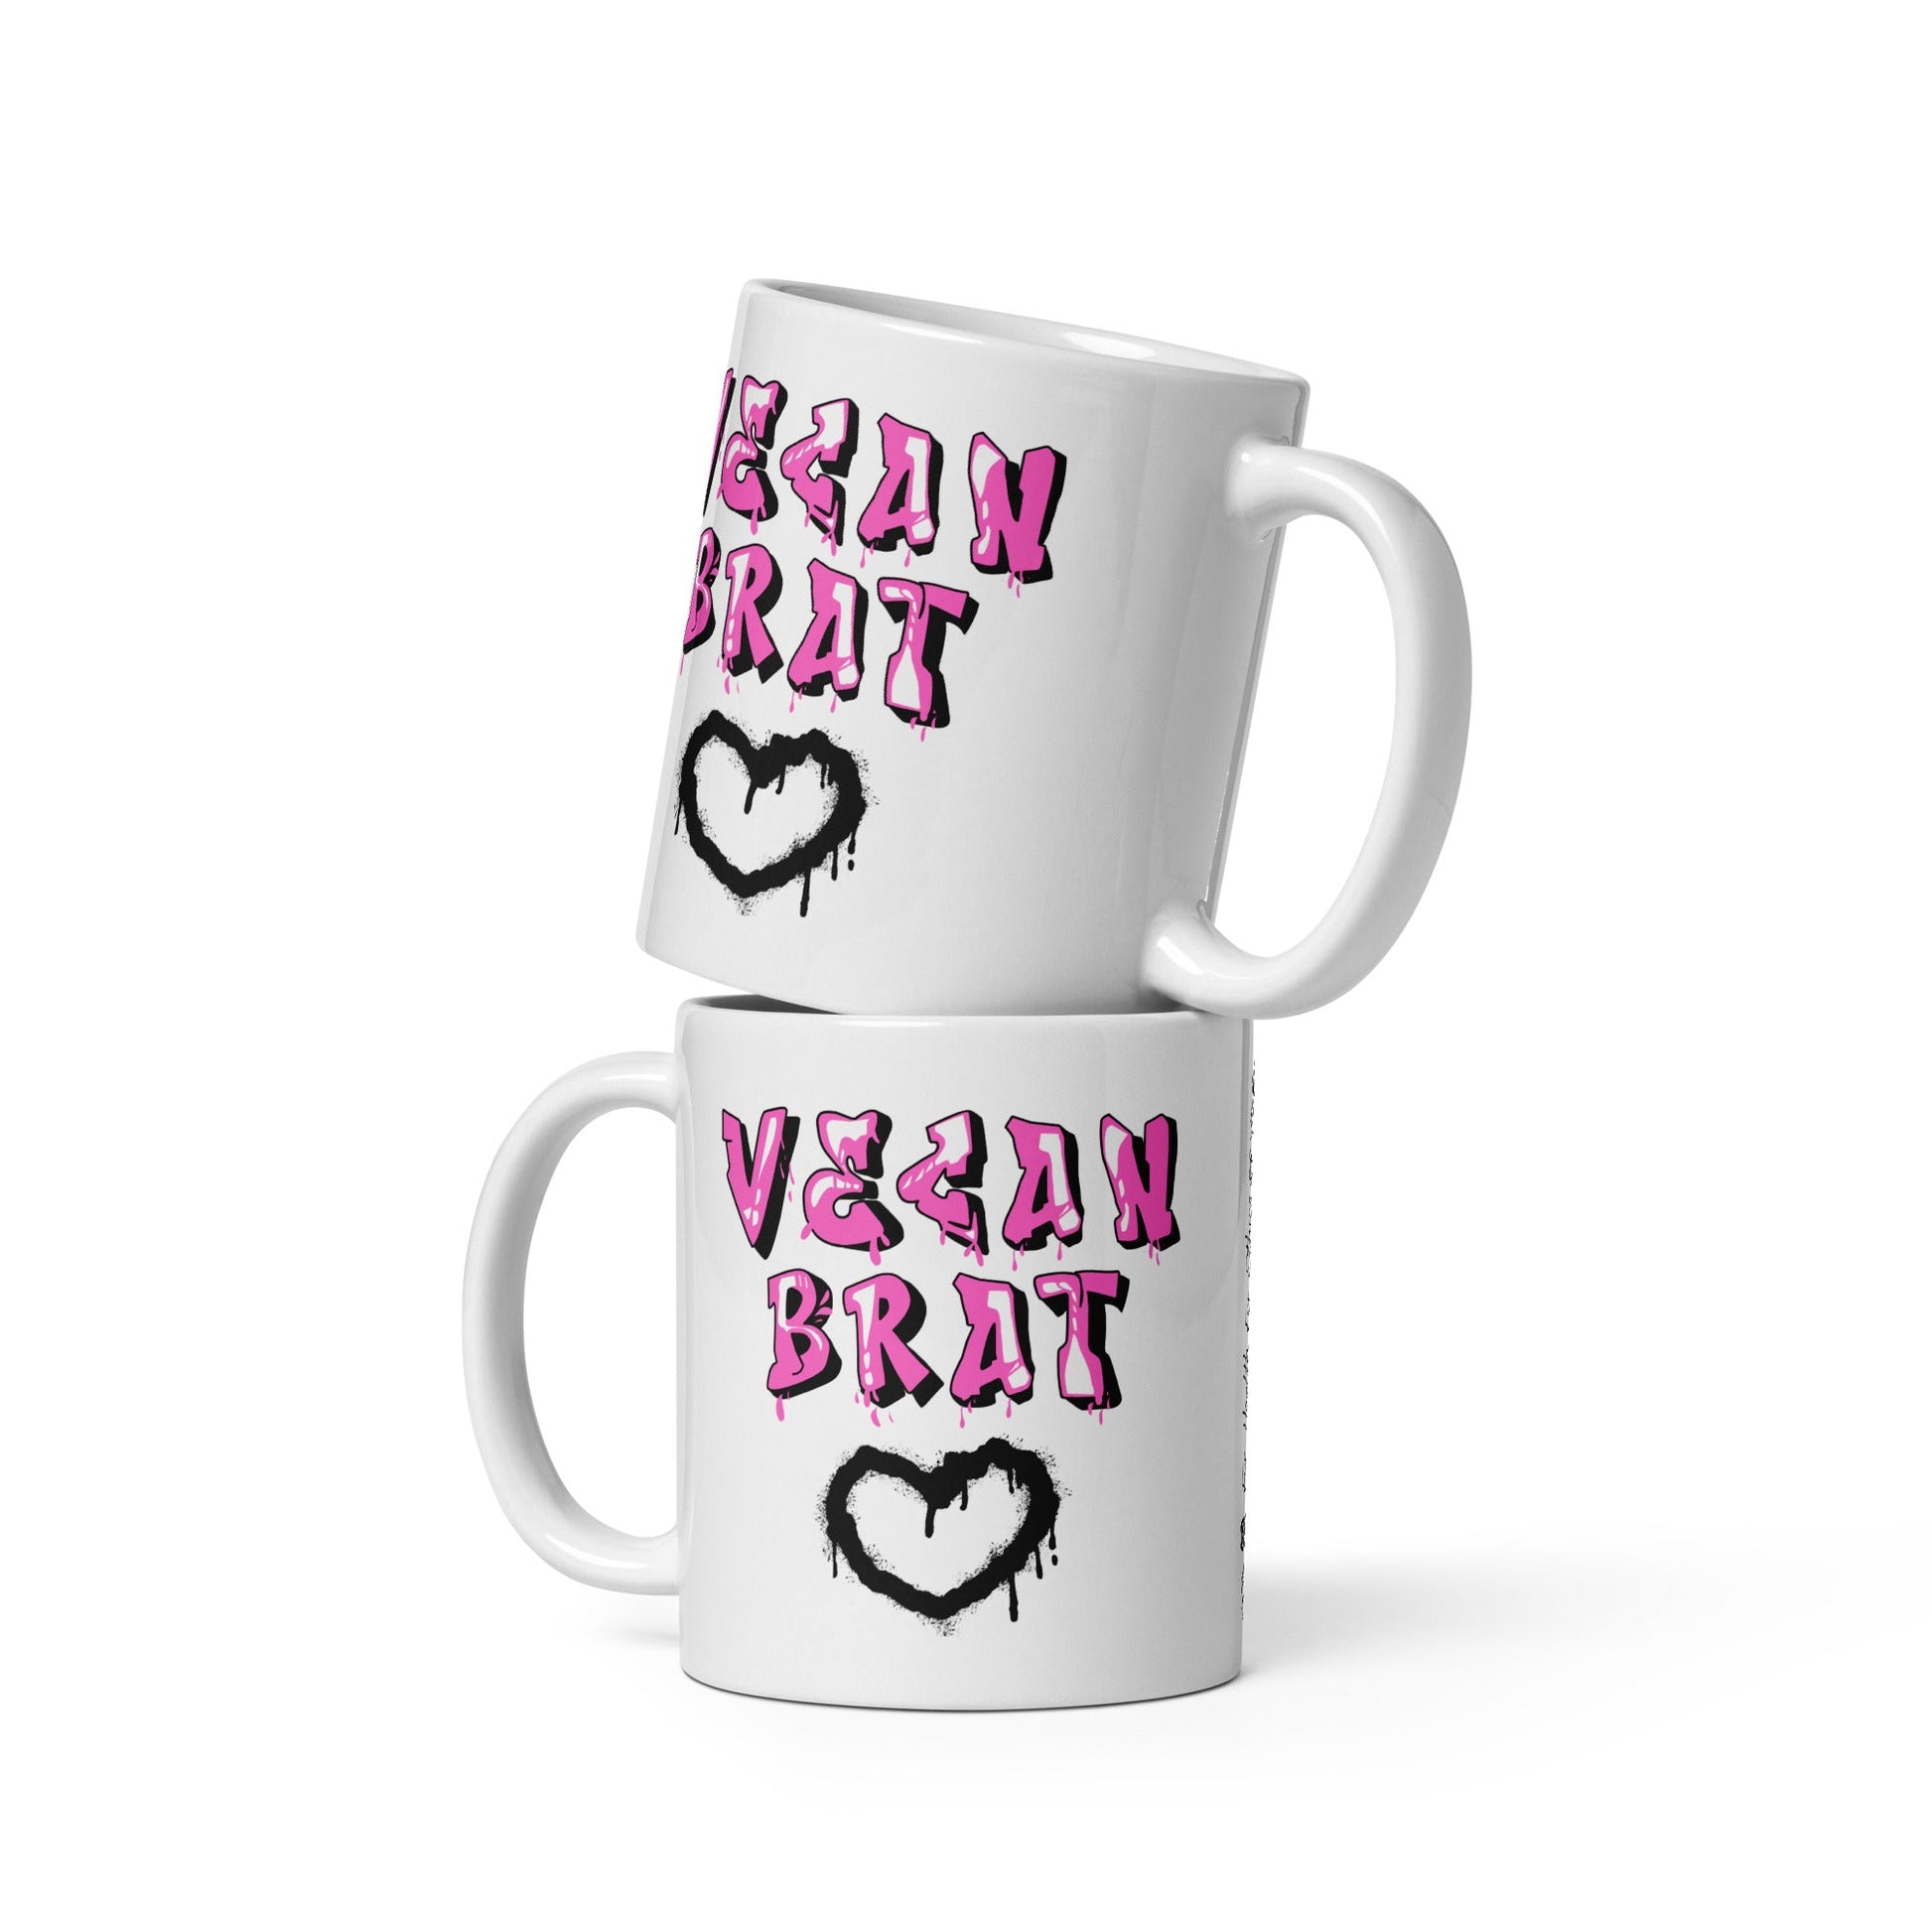 Vegan Brat Mug - For Health For Ethics - 11 oz